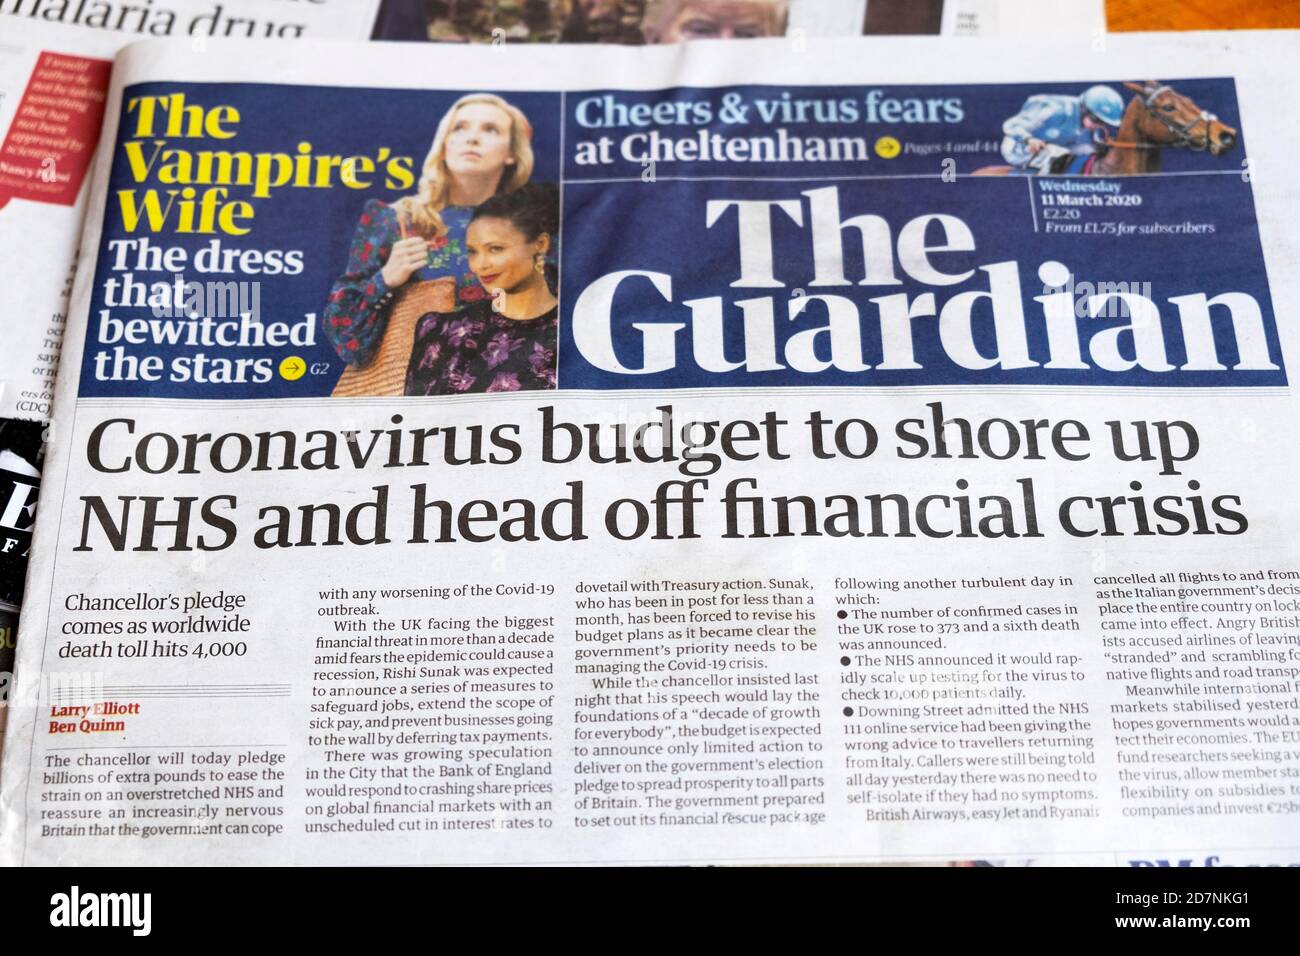 "Presupuesto de coronavirus para apuntalar NHS y la cabeza de la financiación Artículo principal del periódico crisis' Guardian 11 de marzo de 2020 Londres Inglaterra REINO UNIDO Foto de stock